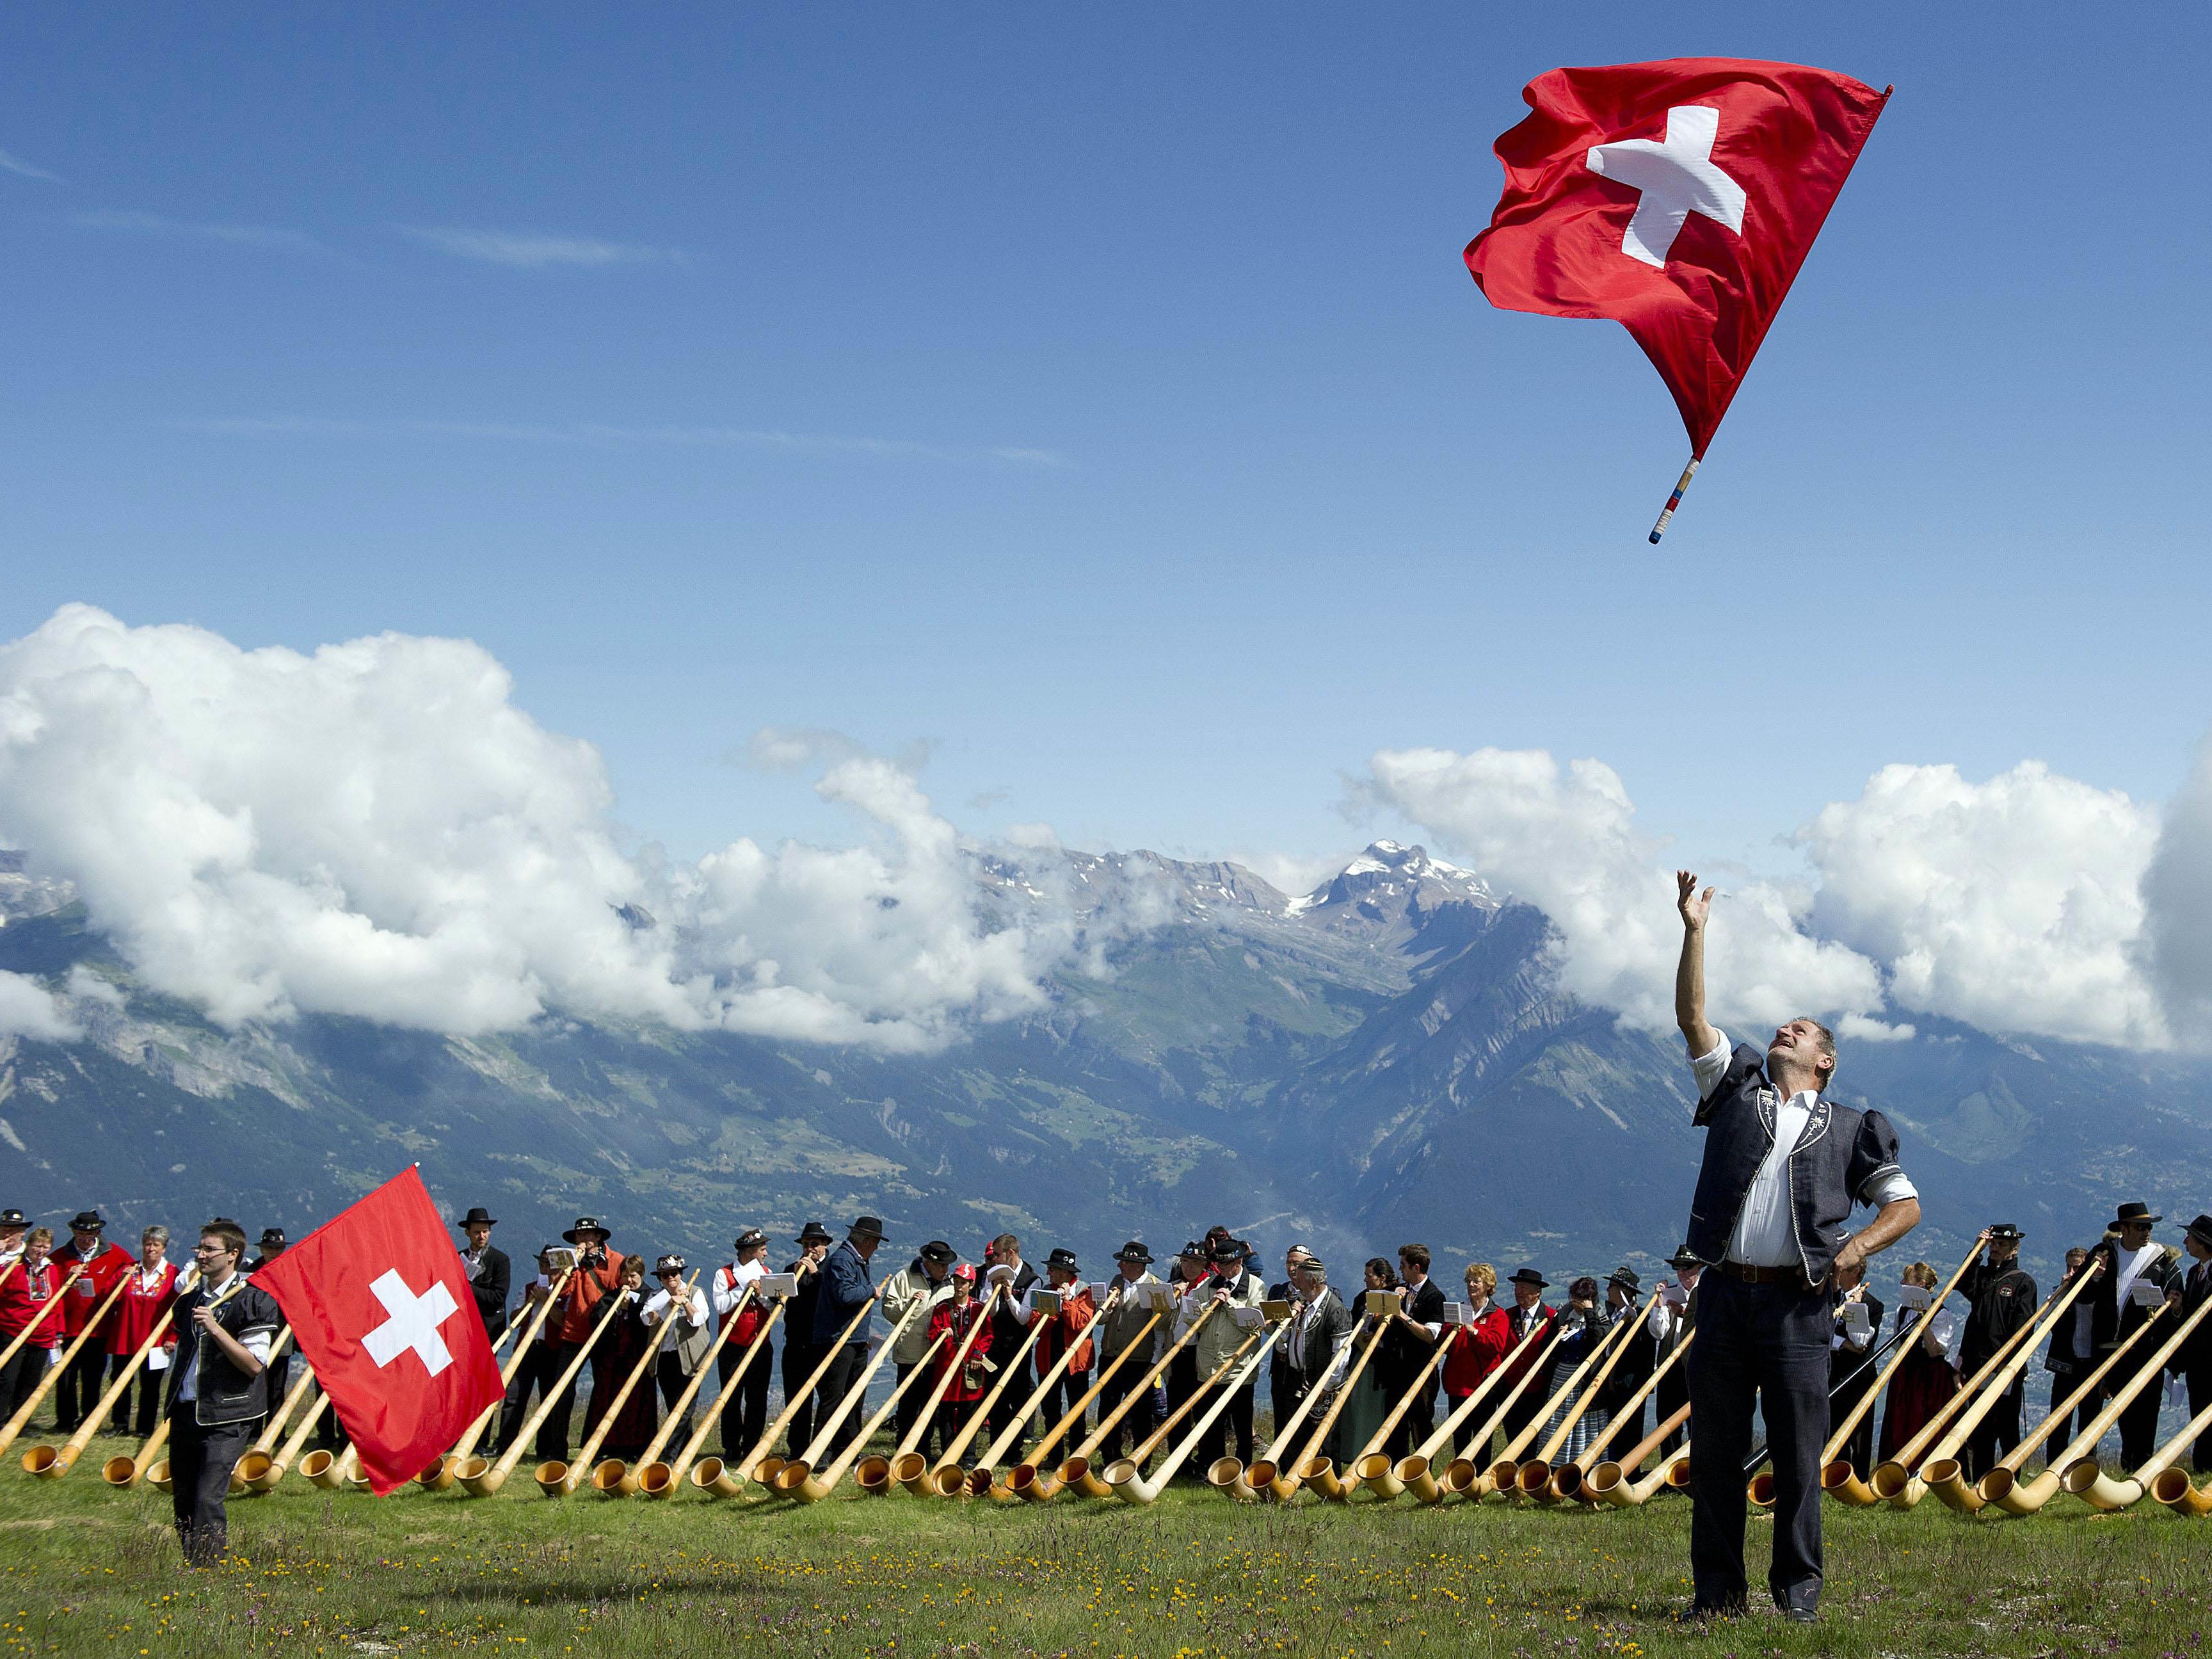 Bei Masseneinwanderungs-Initiative stimmte Schweizer Volk erstmals gegen bestehende Politik.